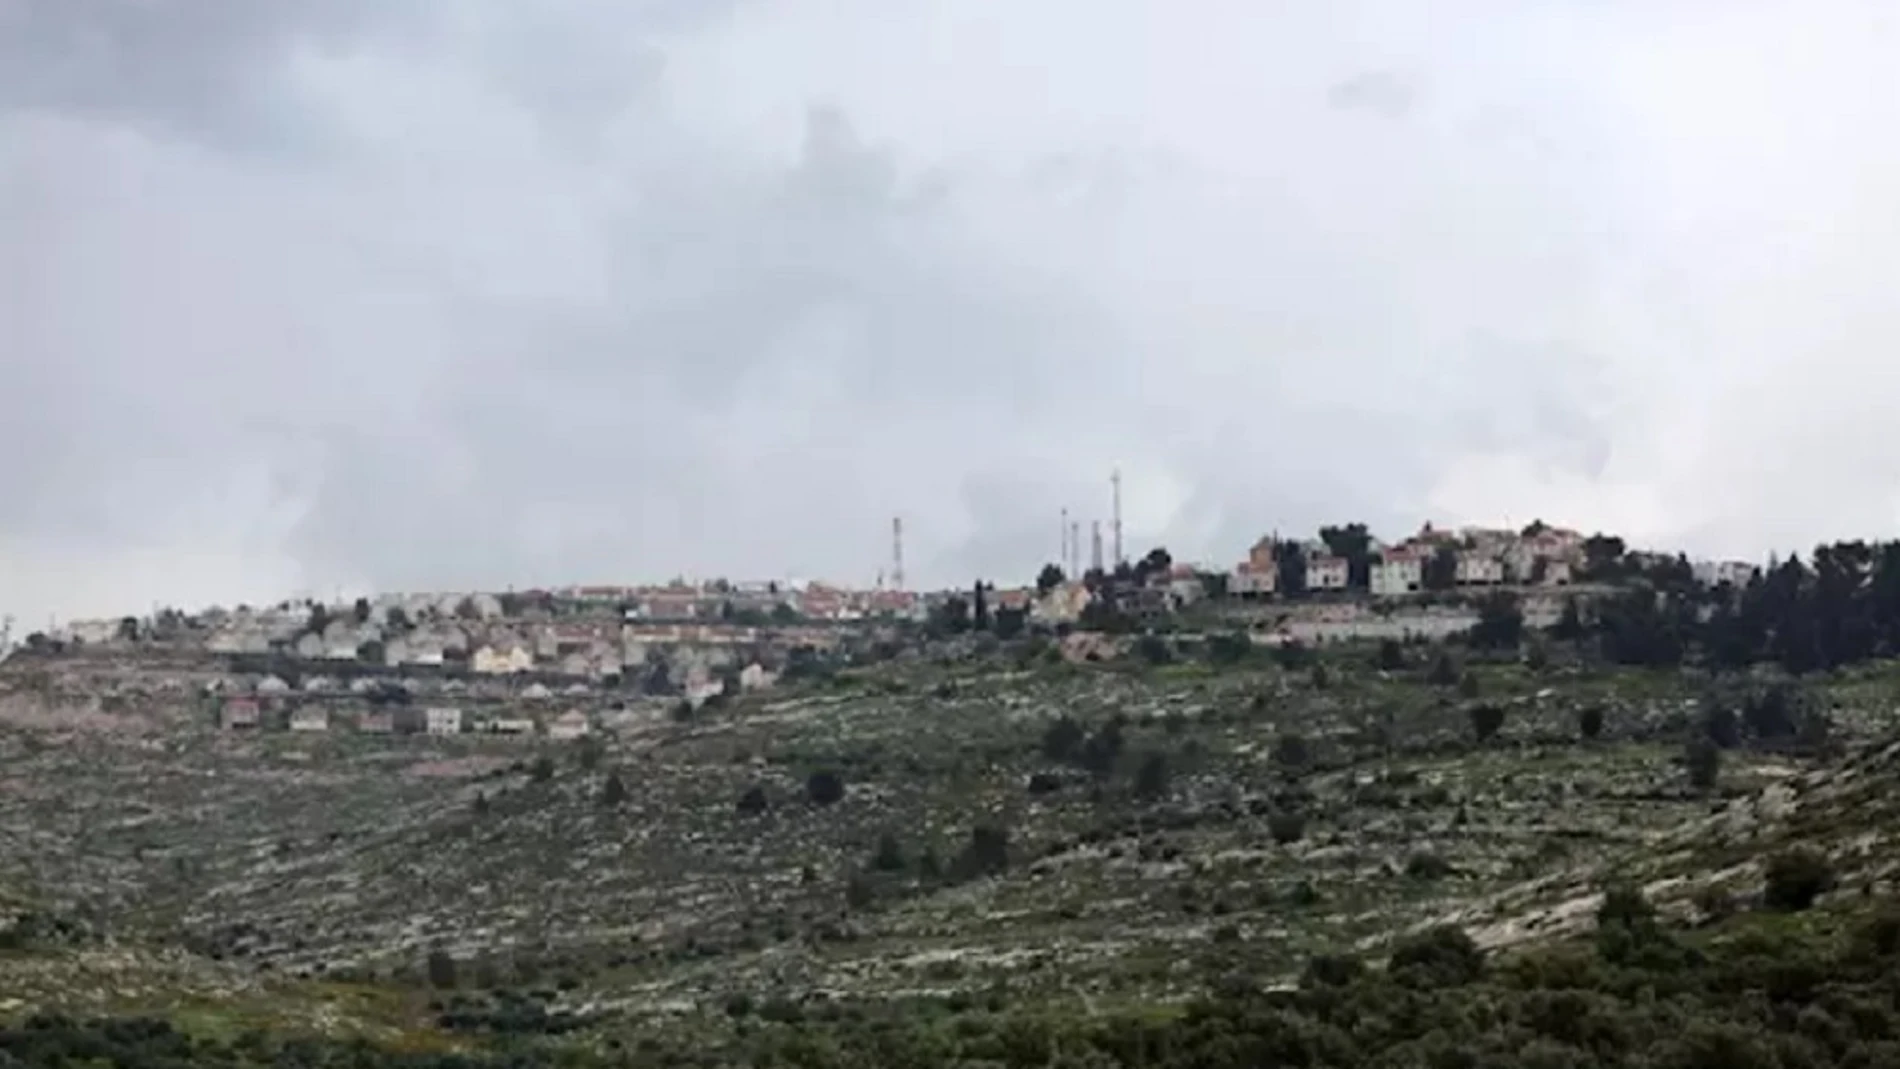 Vista general del asentamiento israelí de Elon Moreh, situado cerca de la ciudad palestina de Nablús, en Cisjordania